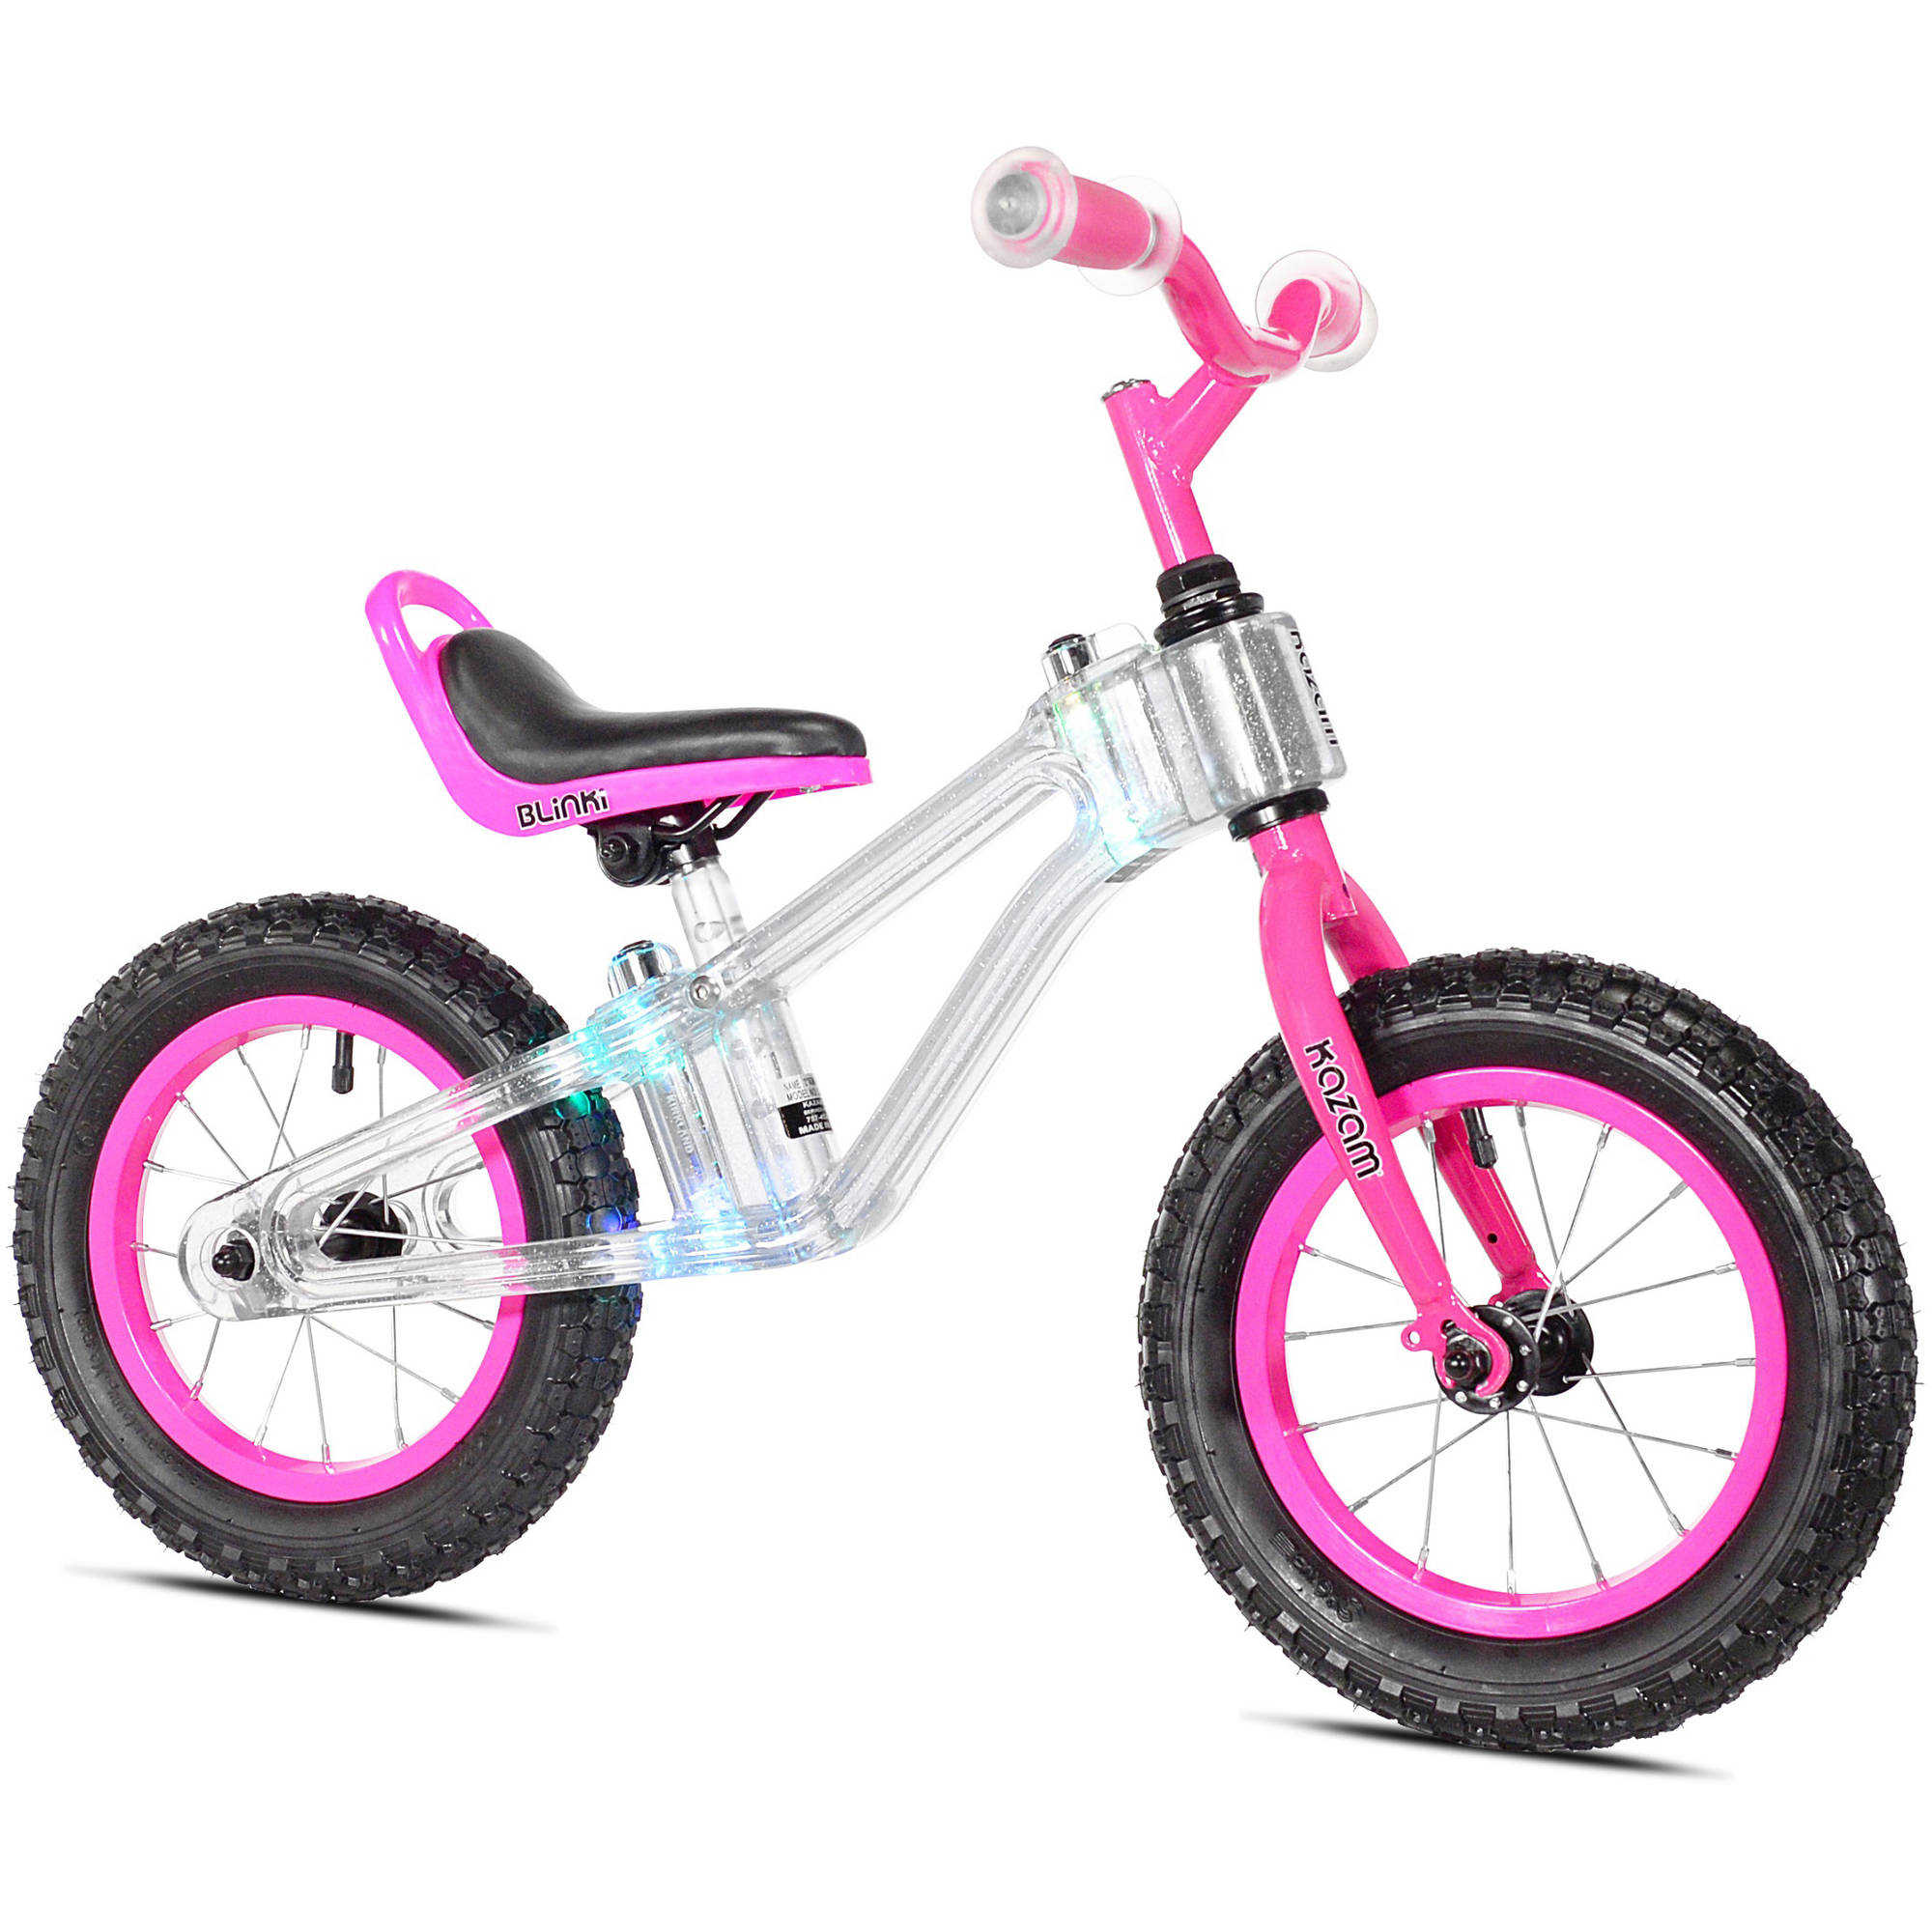 KaZAM 12" Blinki Balance Child's Bike with Multi-Colored LED Lights, Pink - image 1 of 6